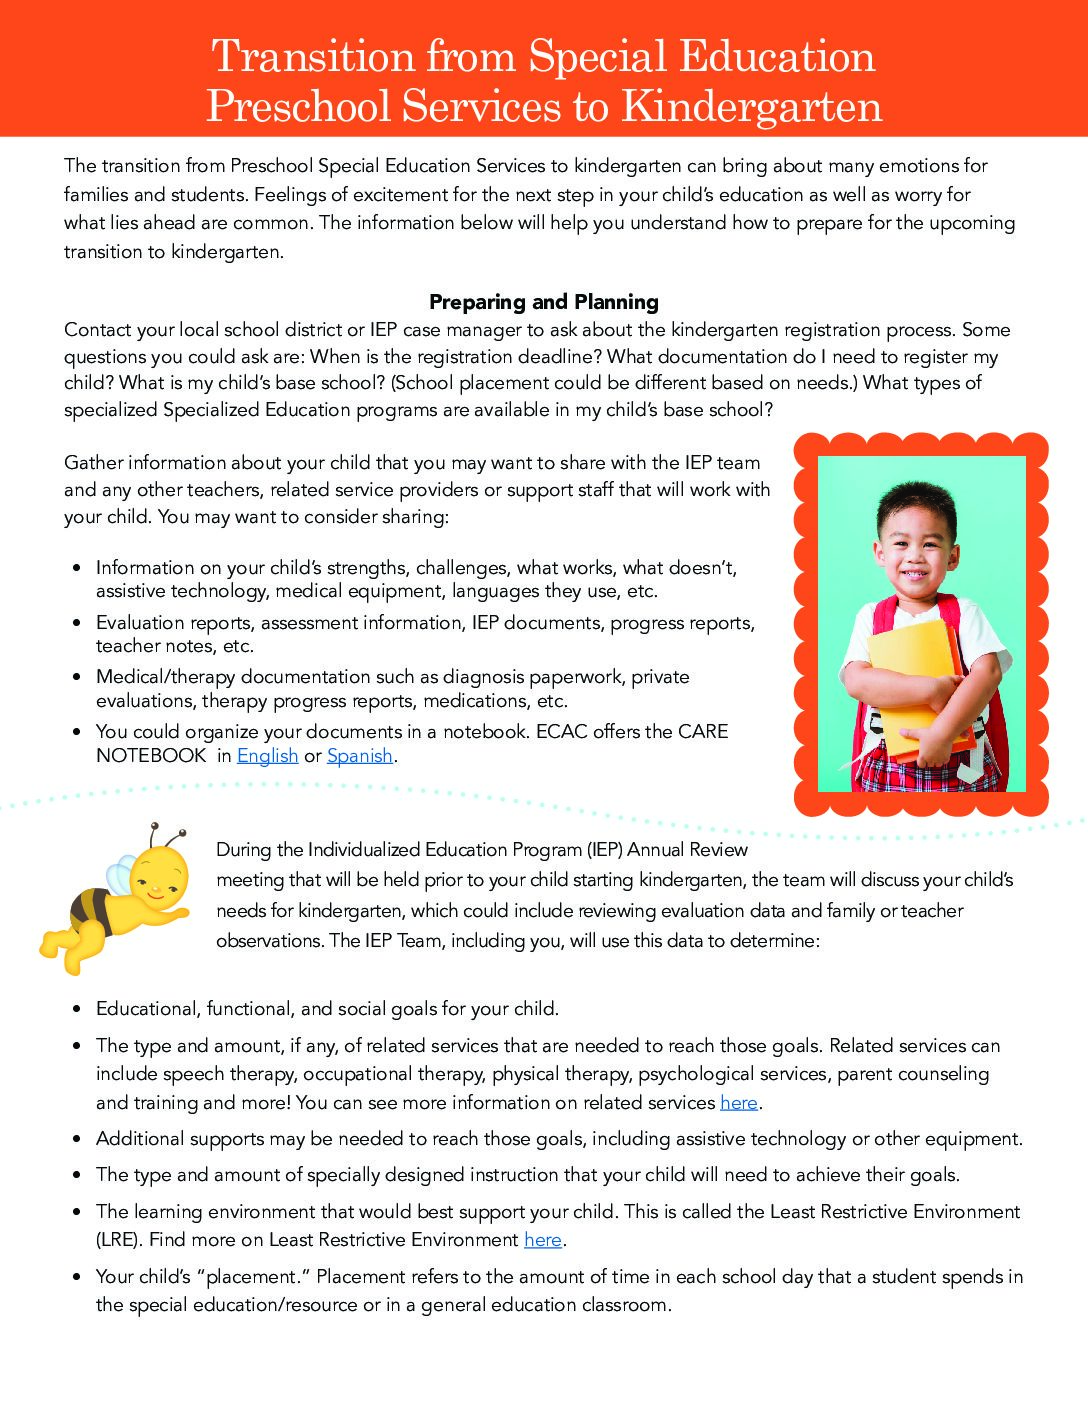 Transition to Kindergarten Factsheet_Final